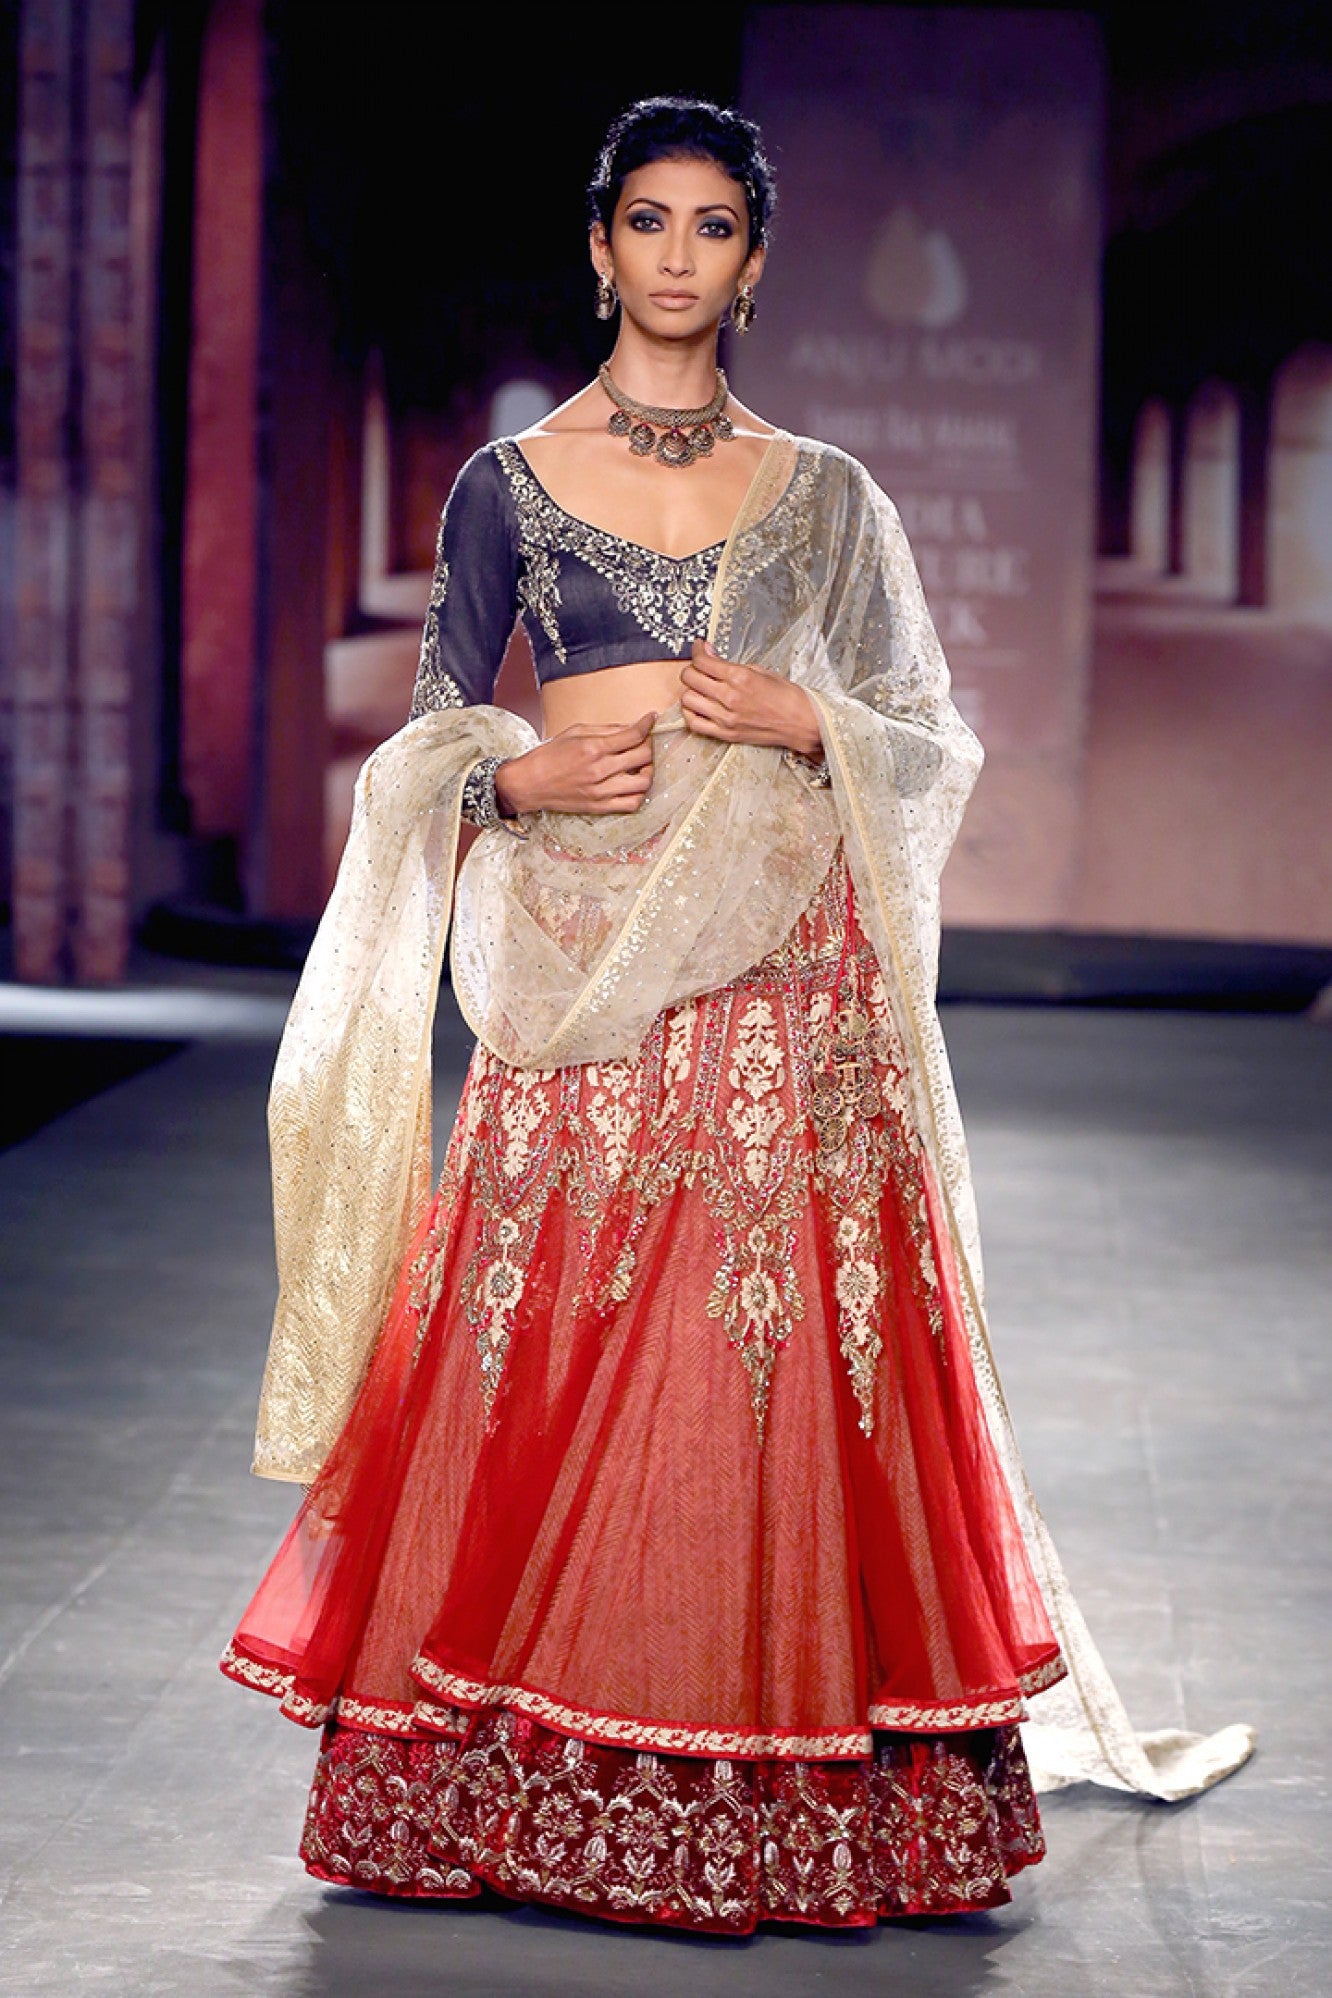 Red Sabyasachi Designer Lehenga Choli, Fully Embroidered Wedding Lehenga  Choli, Reception Wear Lehenga Choli, Indian Bridal Lehenga Blouse - Etsy  Denmark